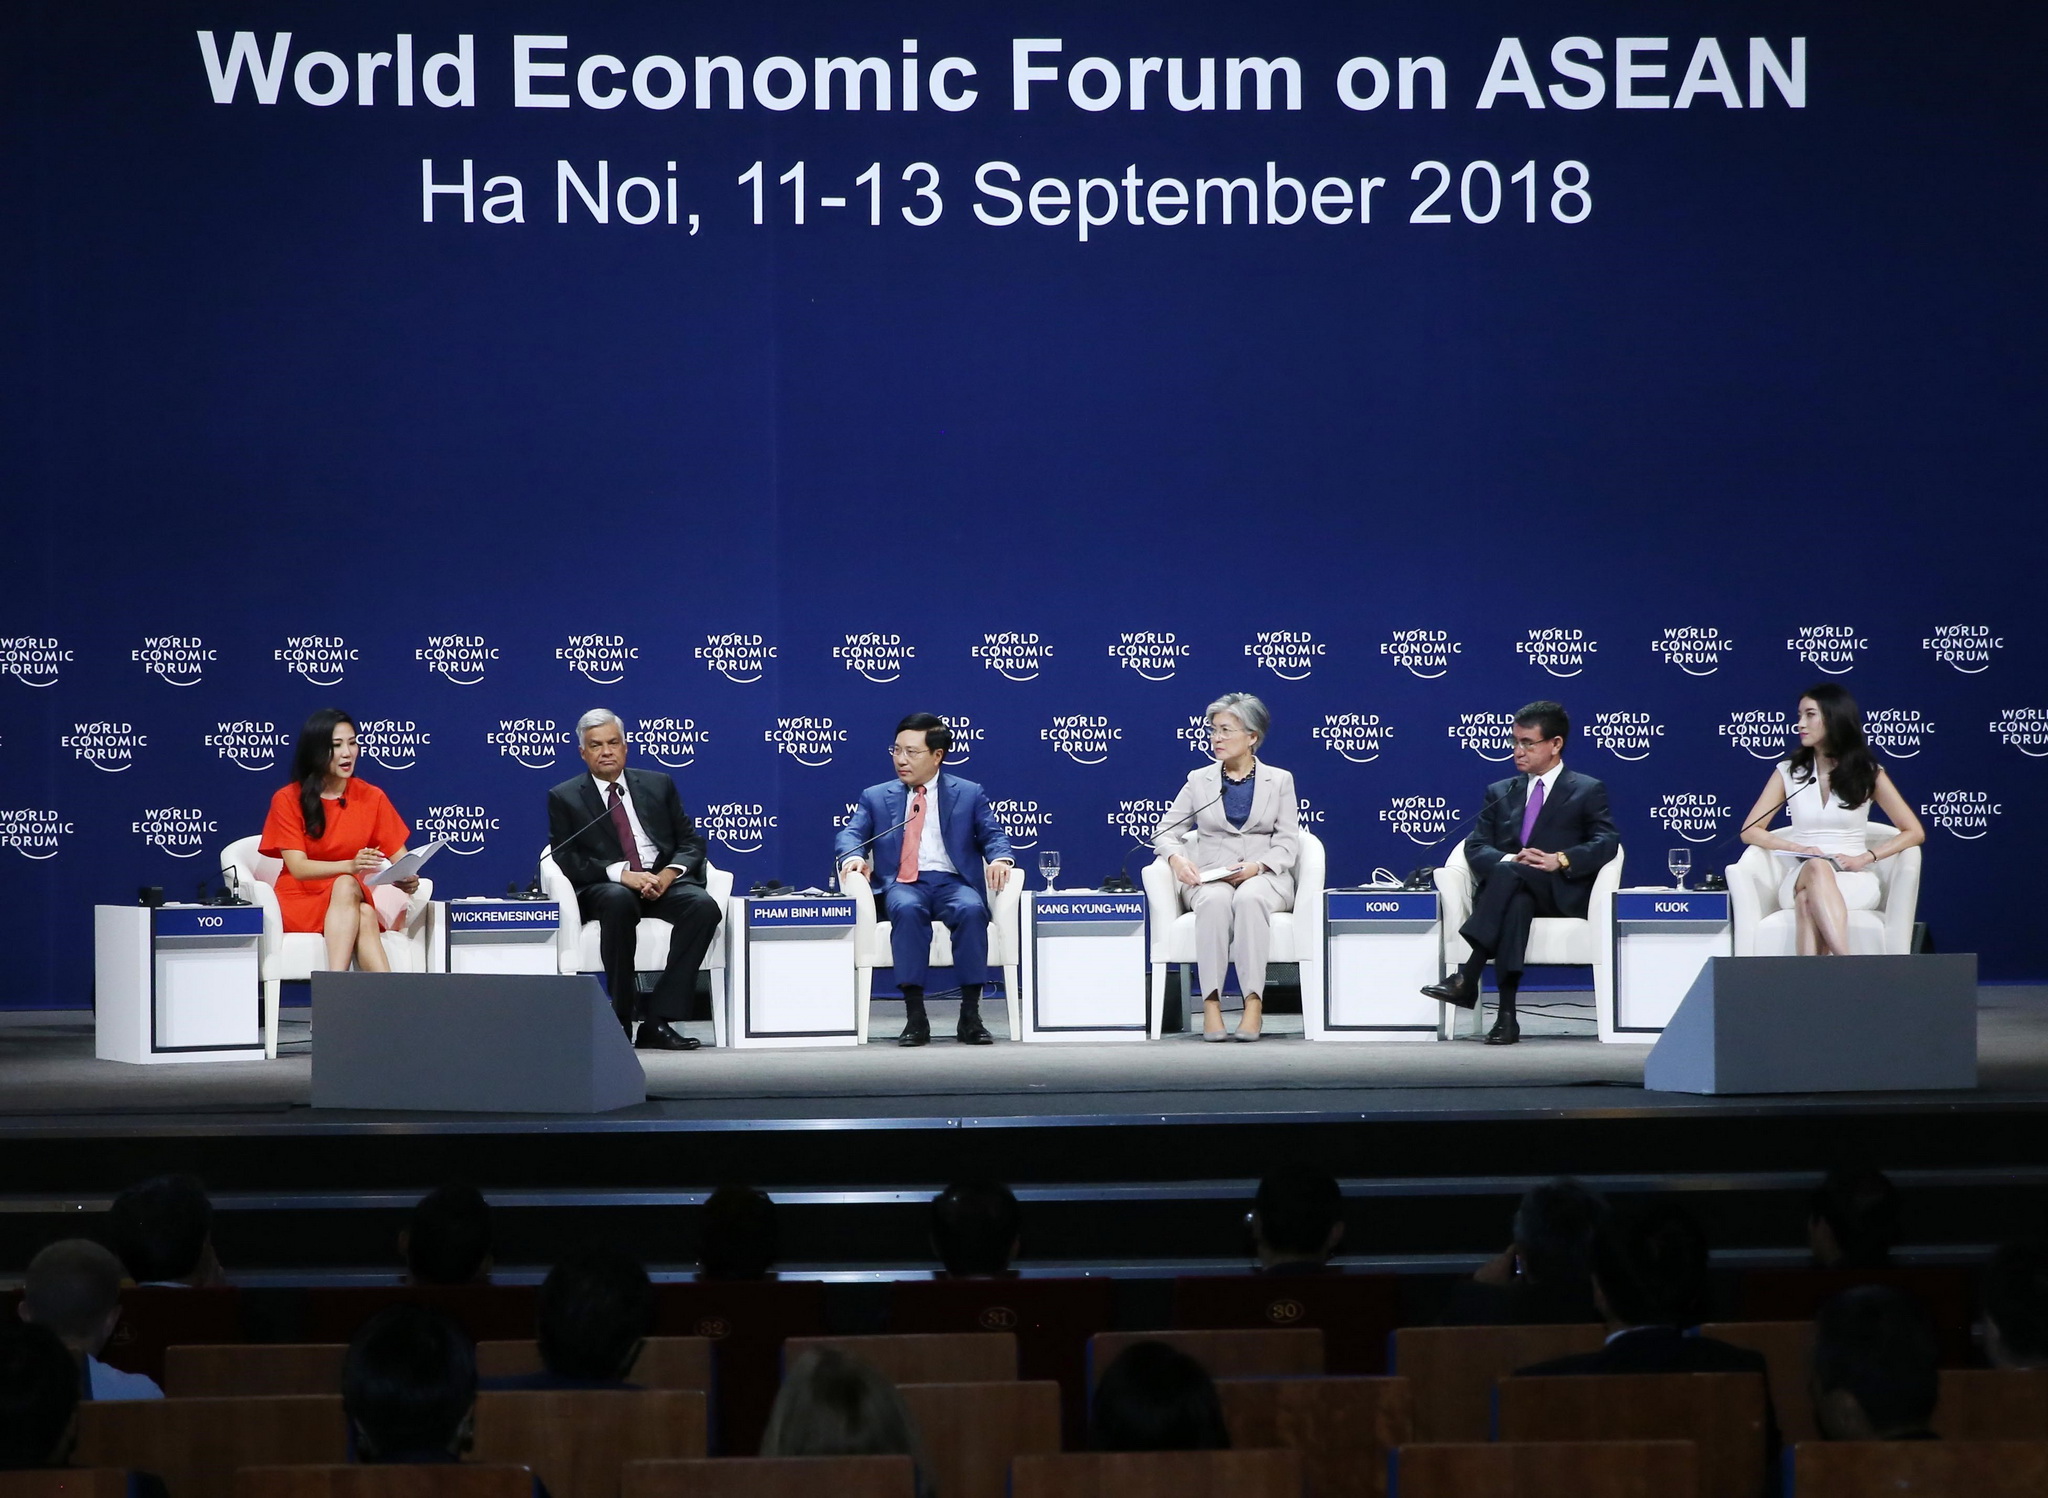 Phiên thảo luận với chủ đề 'Triển vọng Địa chính trị châu Á' trong khuôn khổ Hội nghị Diễn đàn Kinh tế thế giới về ASEAN 2018 (WEF ASEAN 2018) diễn ra tại Hà Nội. (Nguồn: TTXVN)